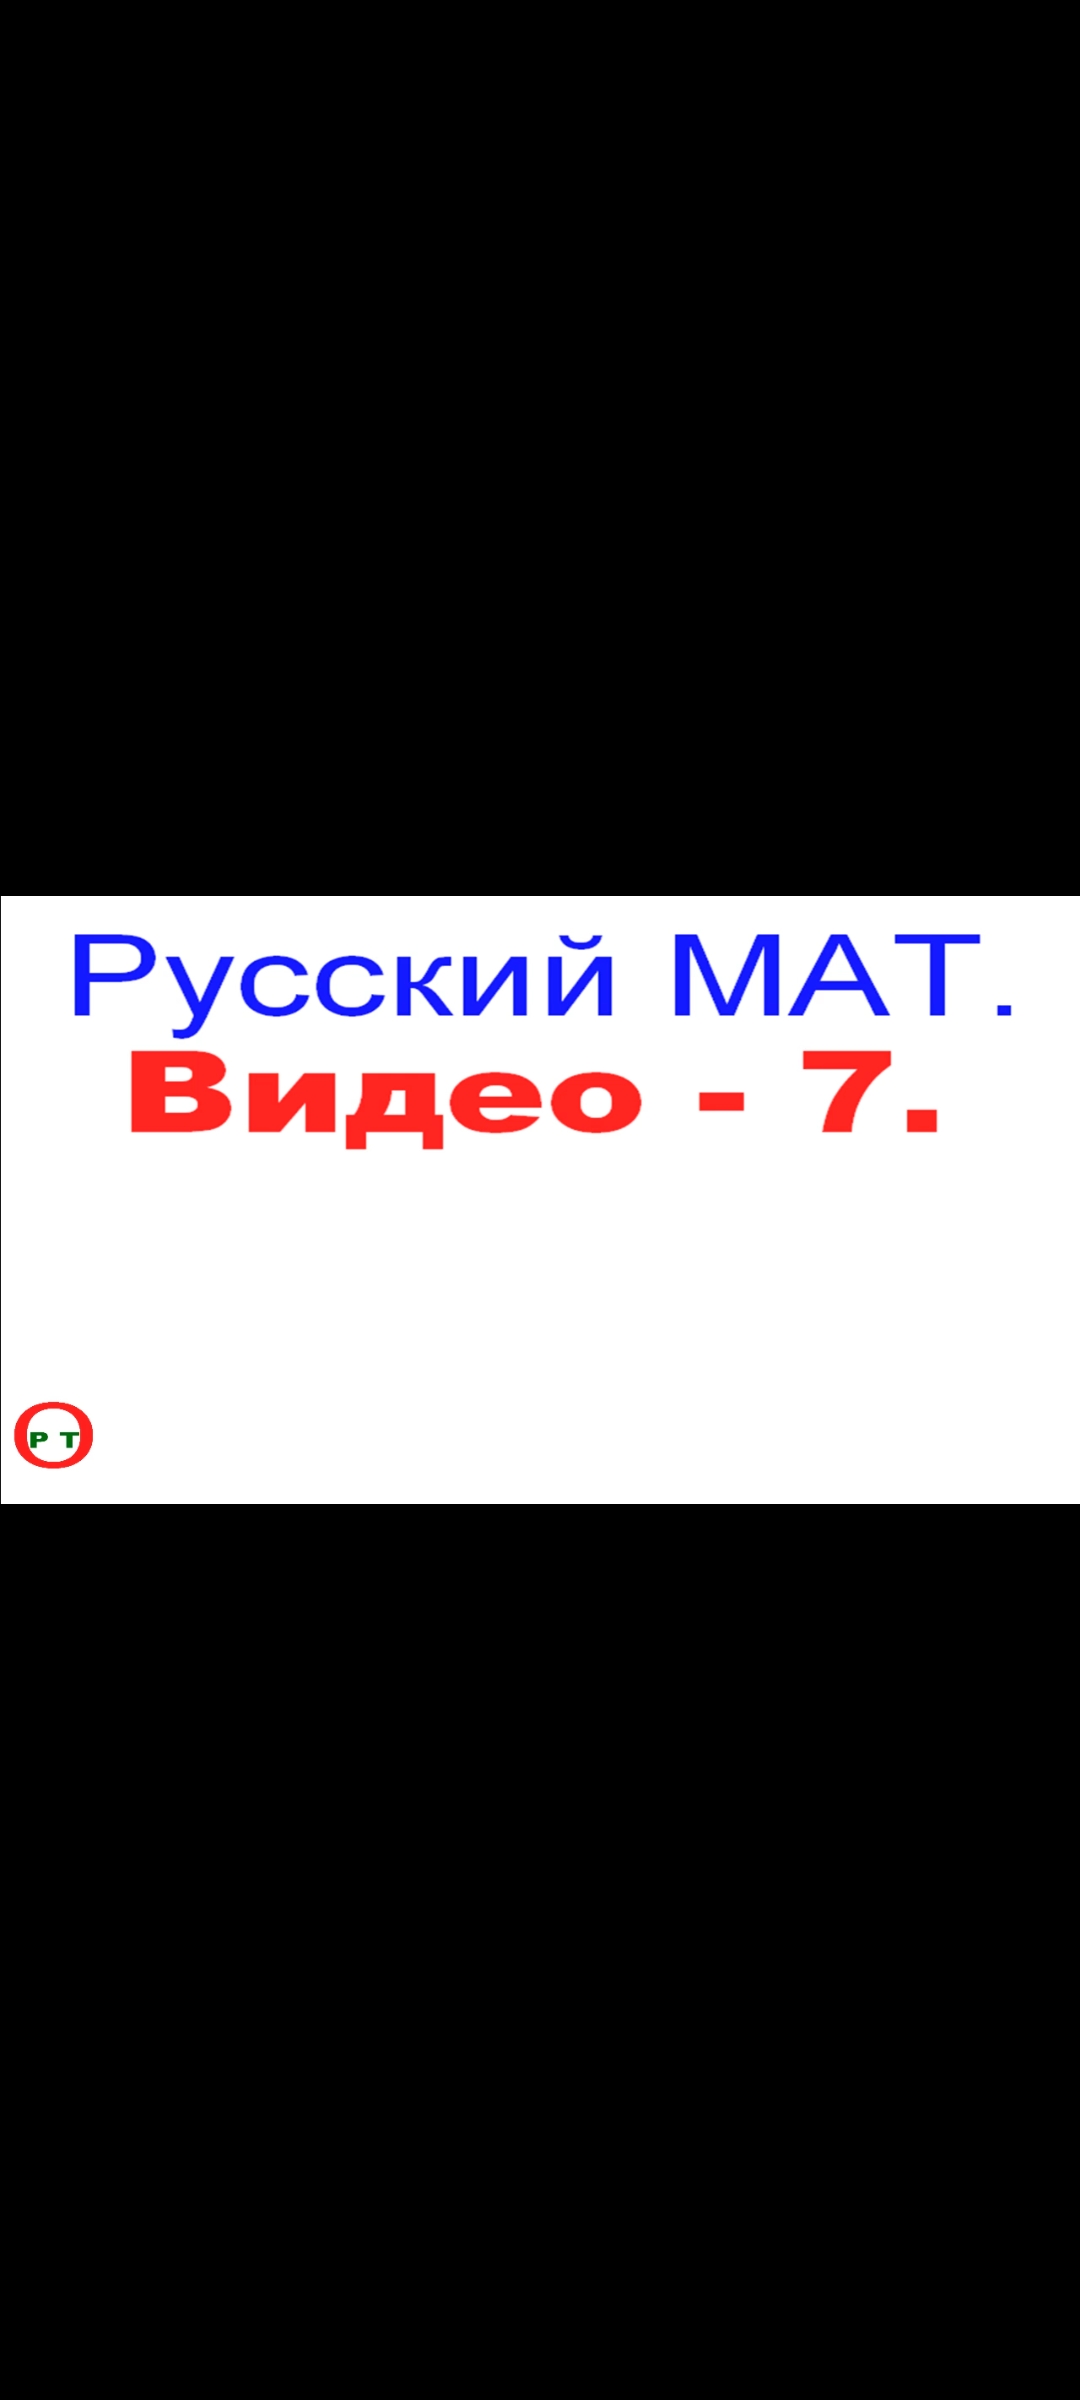 Русский Мат - 7.(Видео 228)